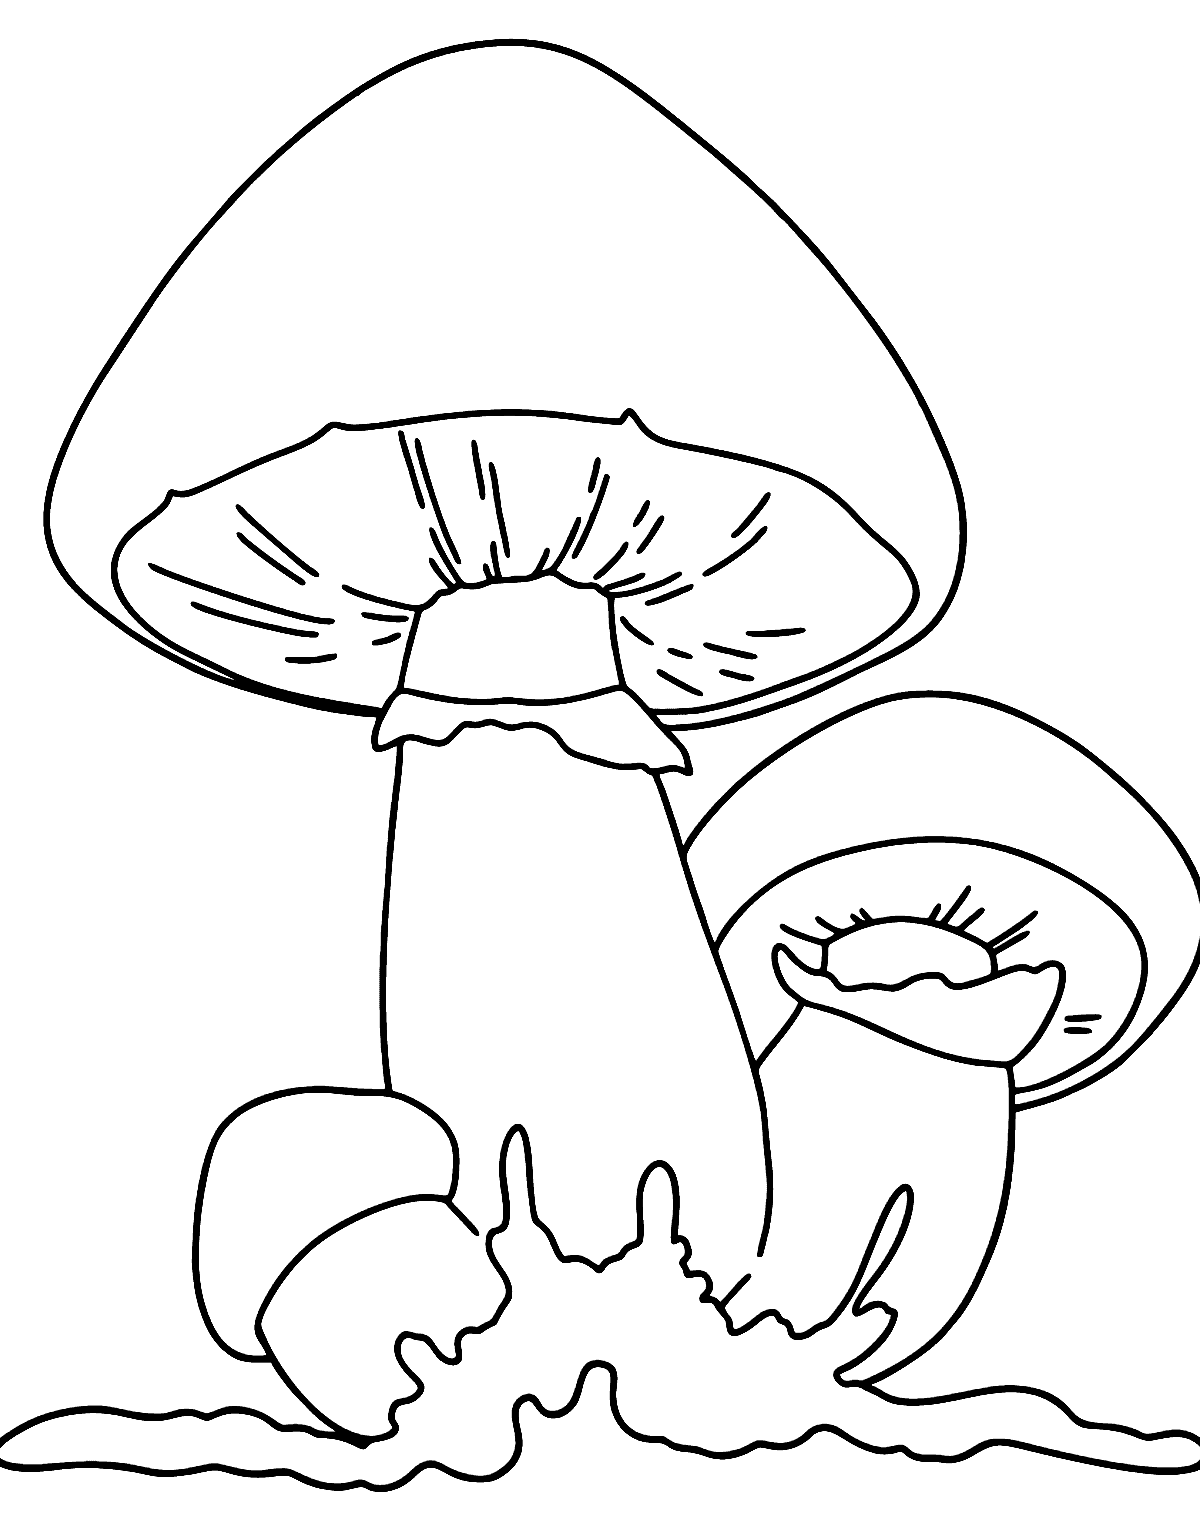 蘑菇的三片蘑菇片